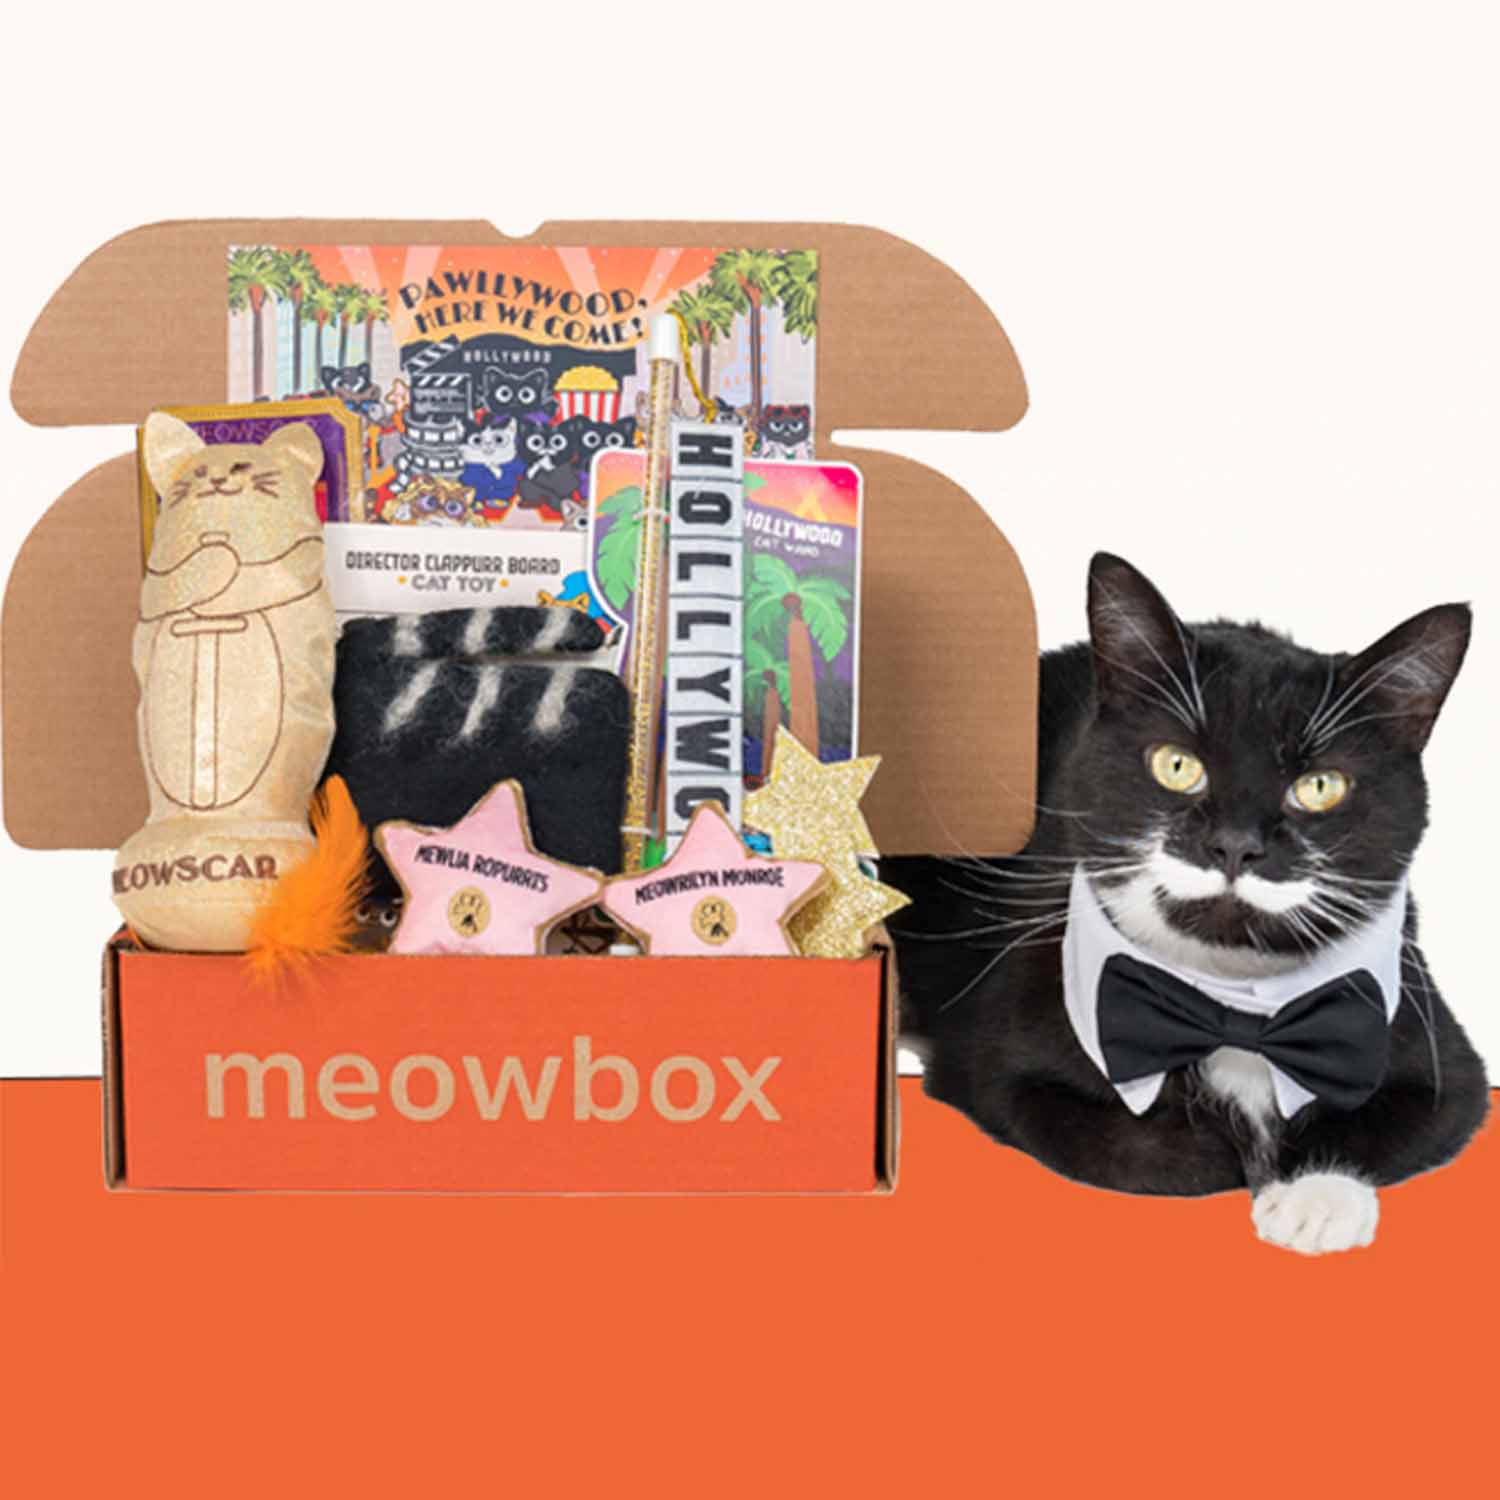 cat sitting next to meowbox 